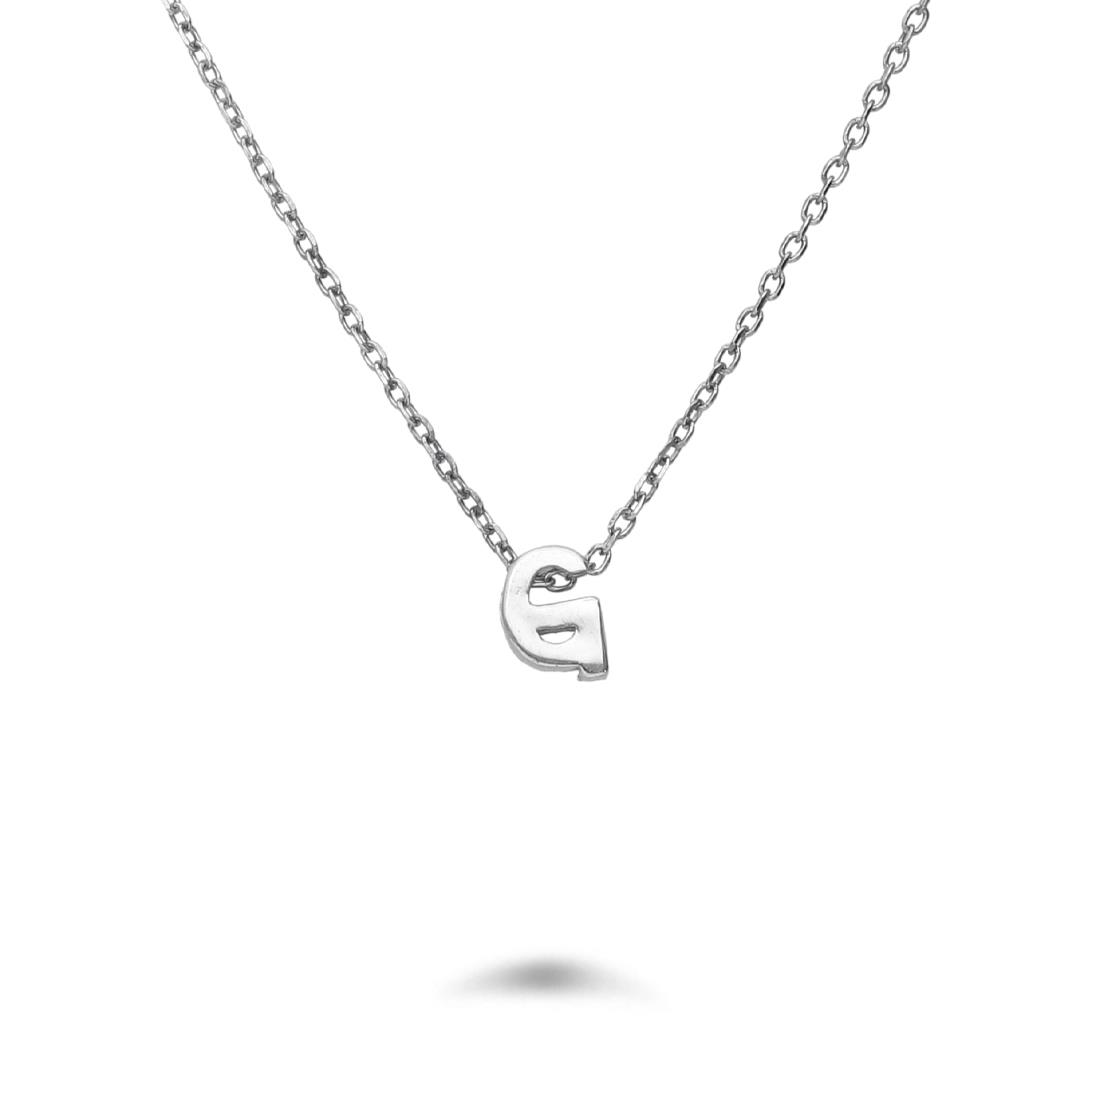 Rolò necklace in rhodium-plated silver with letter G - DESIDERI PREZIOSI